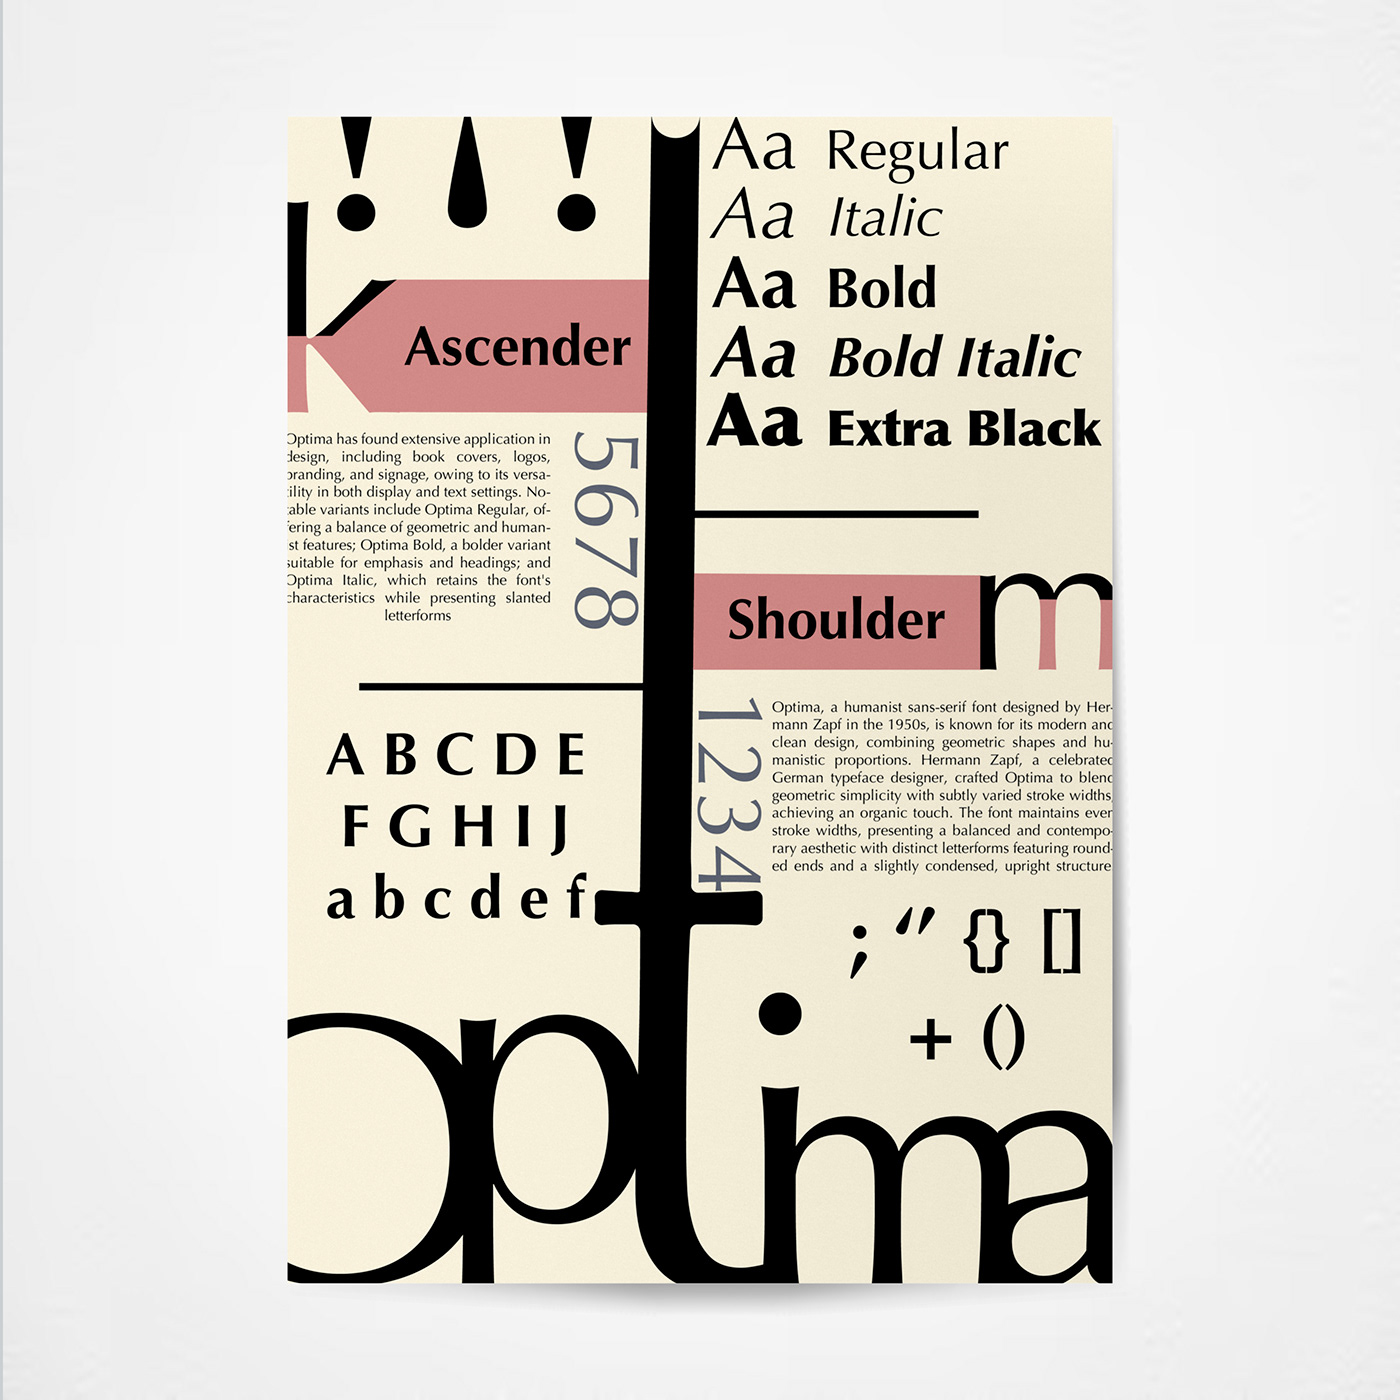 text adobe illustrator Graphic Designer typography   typedesign typography design lettering Mockup design typeographic